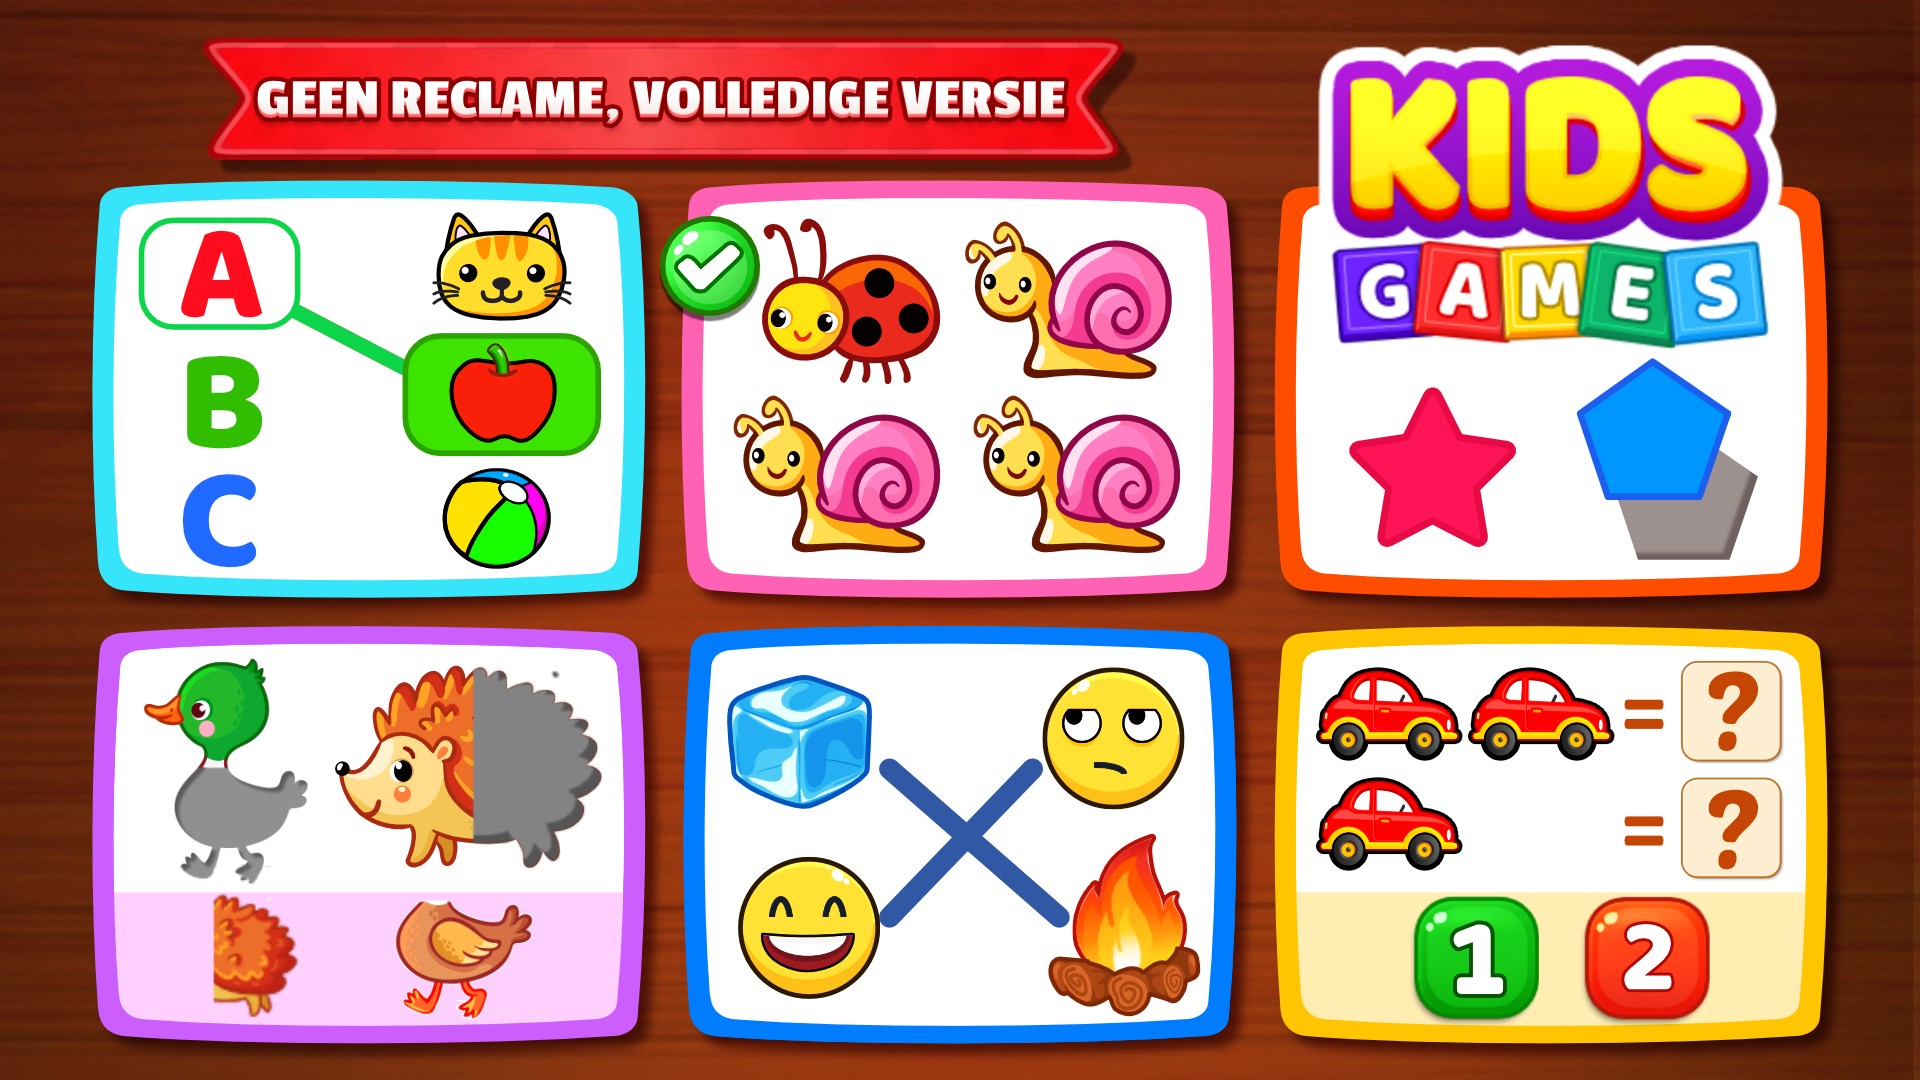 Voorgevoel Tips bijwoord Kinderspellen: kleuren, puzzel kopen - Microsoft Store nl-NL